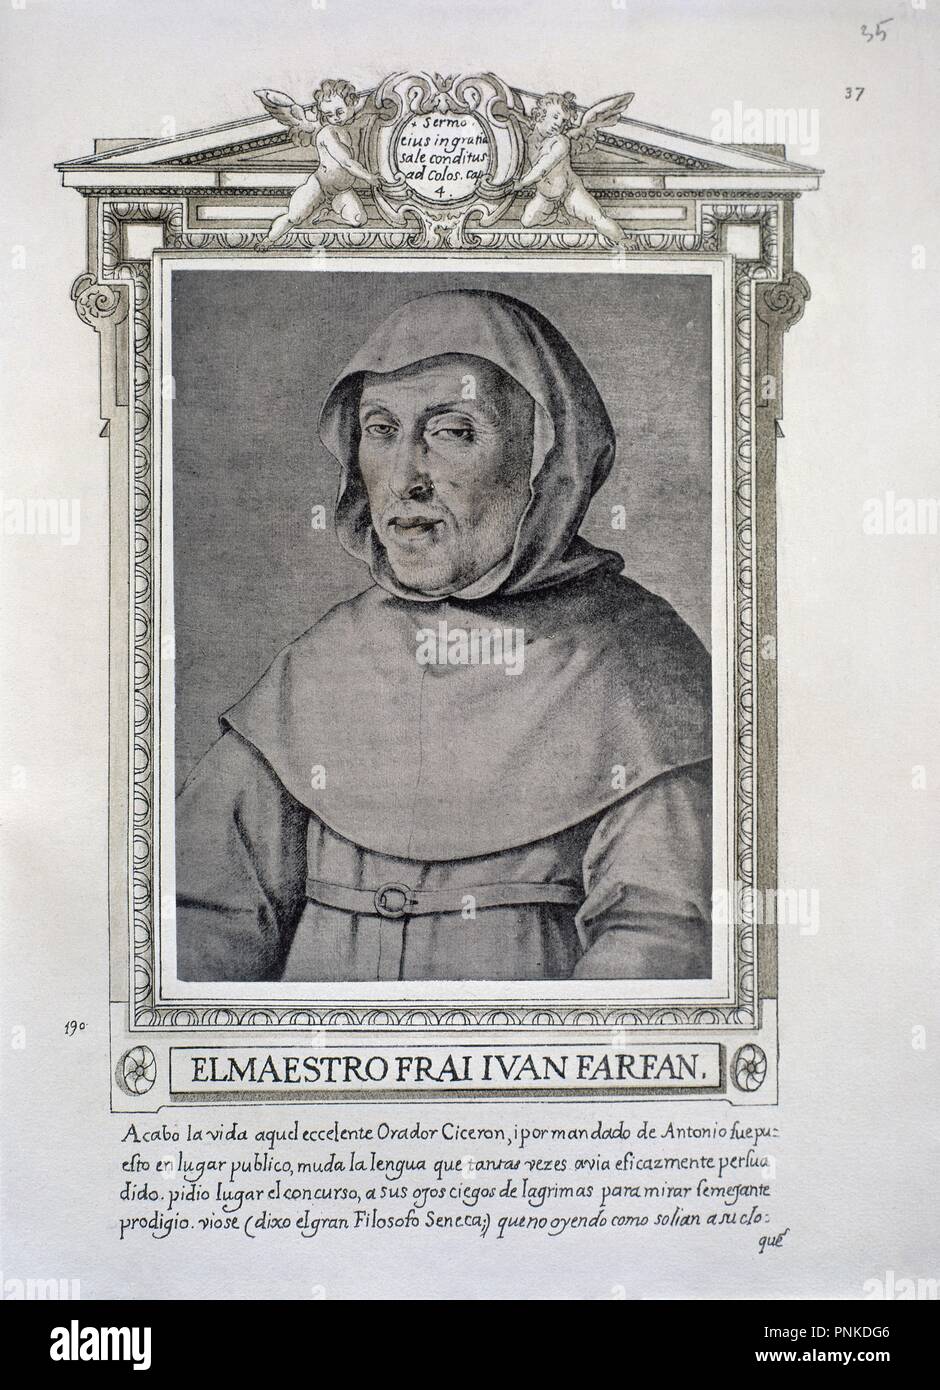 FRAY JUAN FARFAN (1536-1619) - LIBRO DE RETRATOS DE ILUSTRES Y MEMORABLES VARONES - 1599. Author: PACHECO, FRANCISCO. Location: BIBLIOTECA NACIONAL-COLECCION. MADRID. SPAIN. Stock Photo